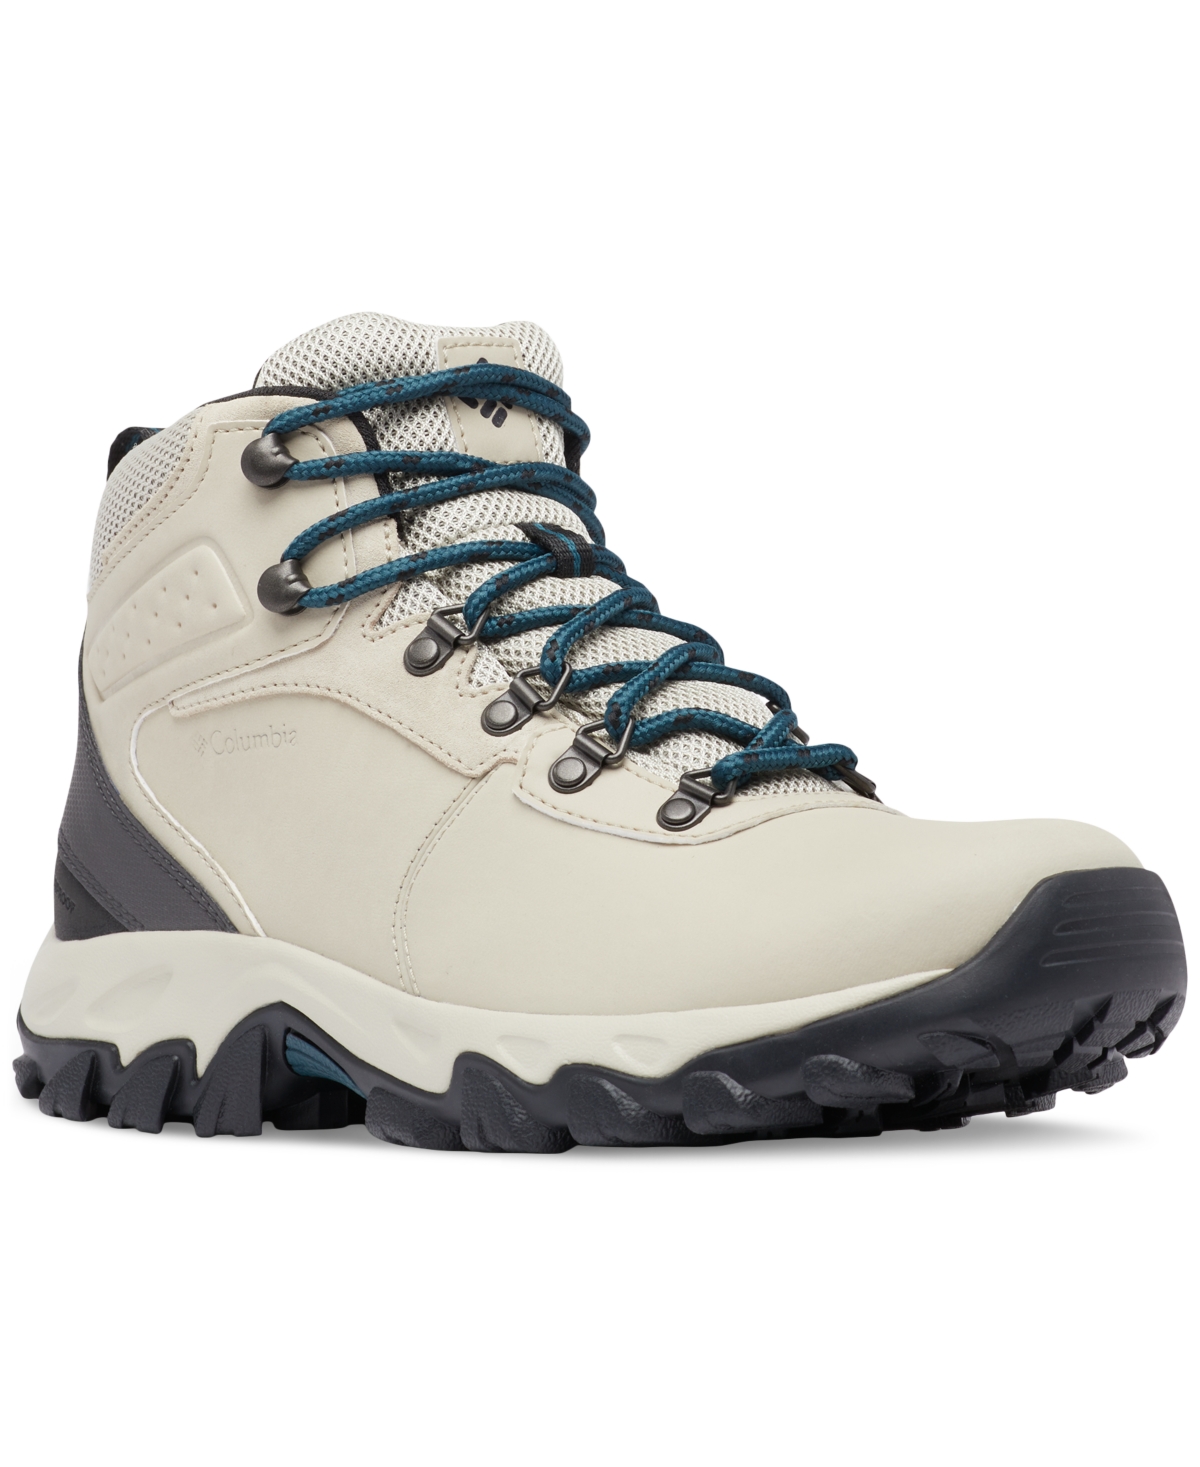 Men's Newton Ridge Plus Ii Waterproof Hiking Boots - Light Clay, Nightwave